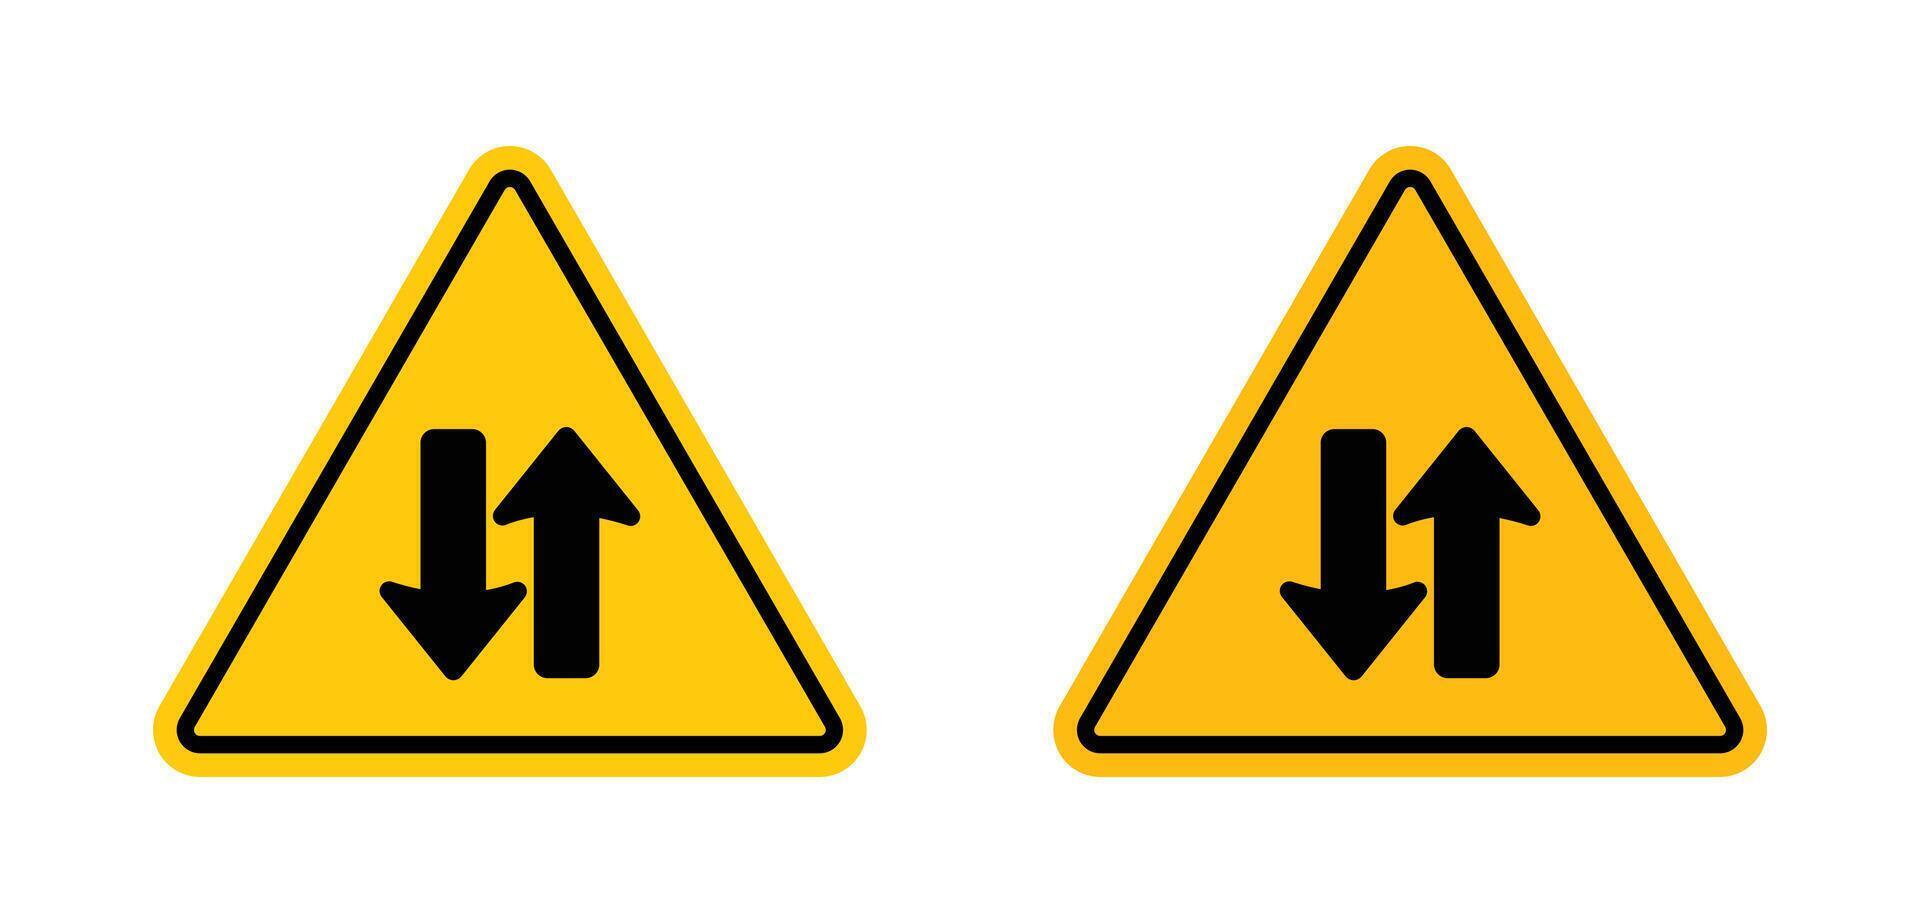 Zwei-Wege-Verkehrszeichen vektor